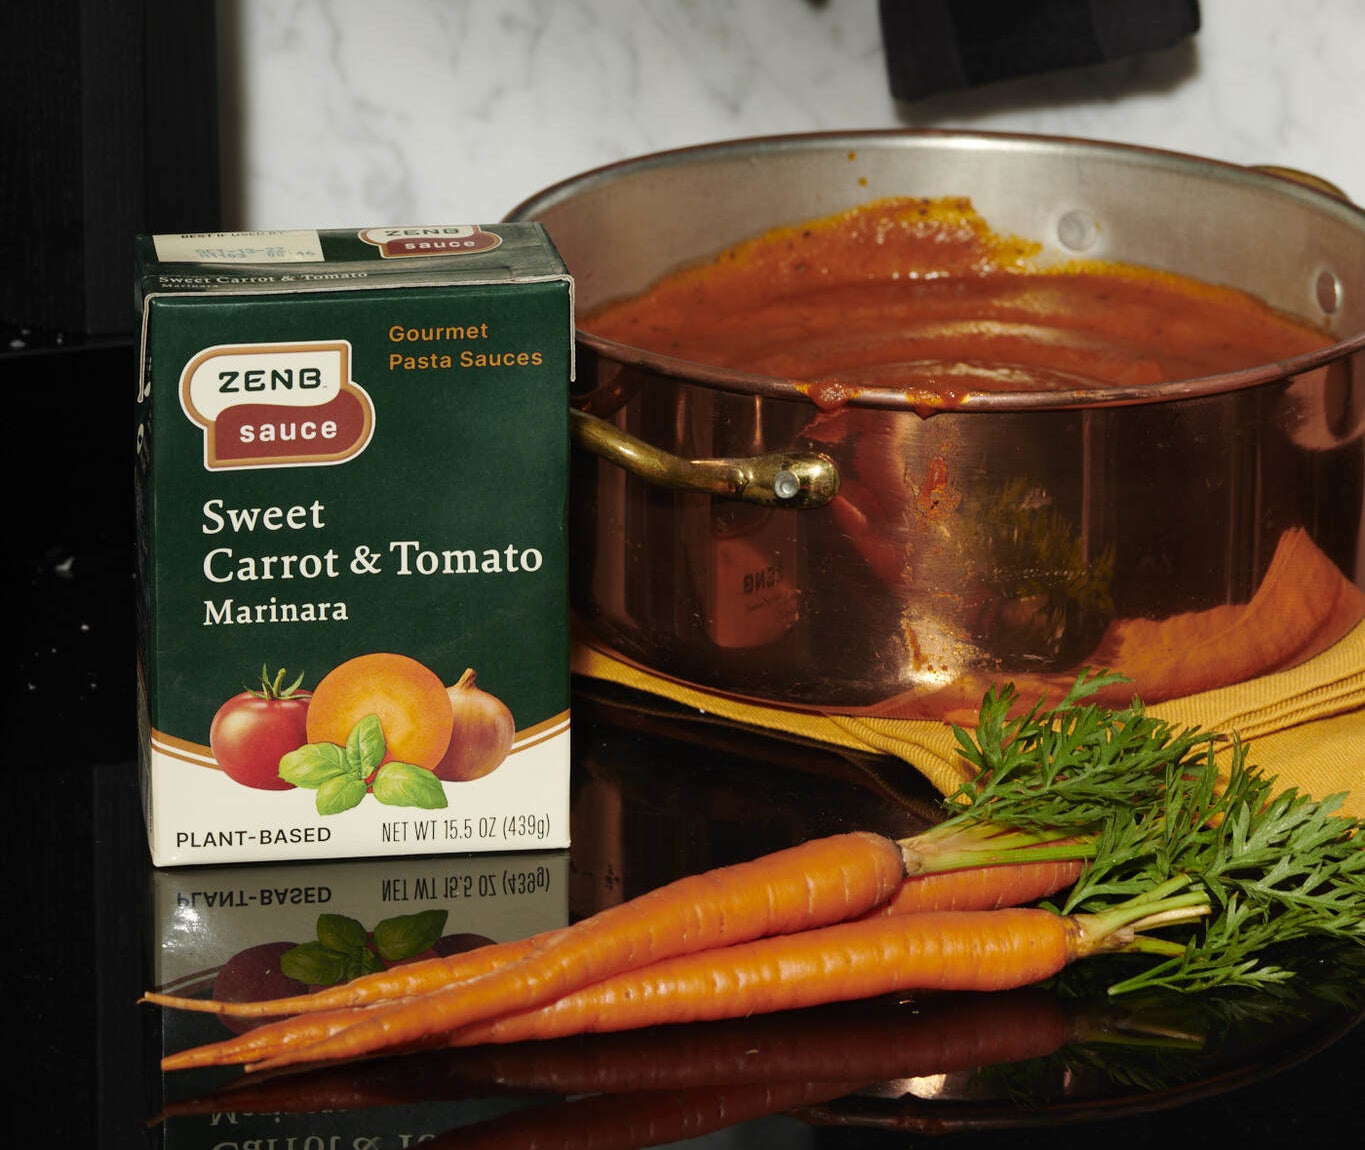 Sweet carrot and tomato marinara sauce near fresh carrots